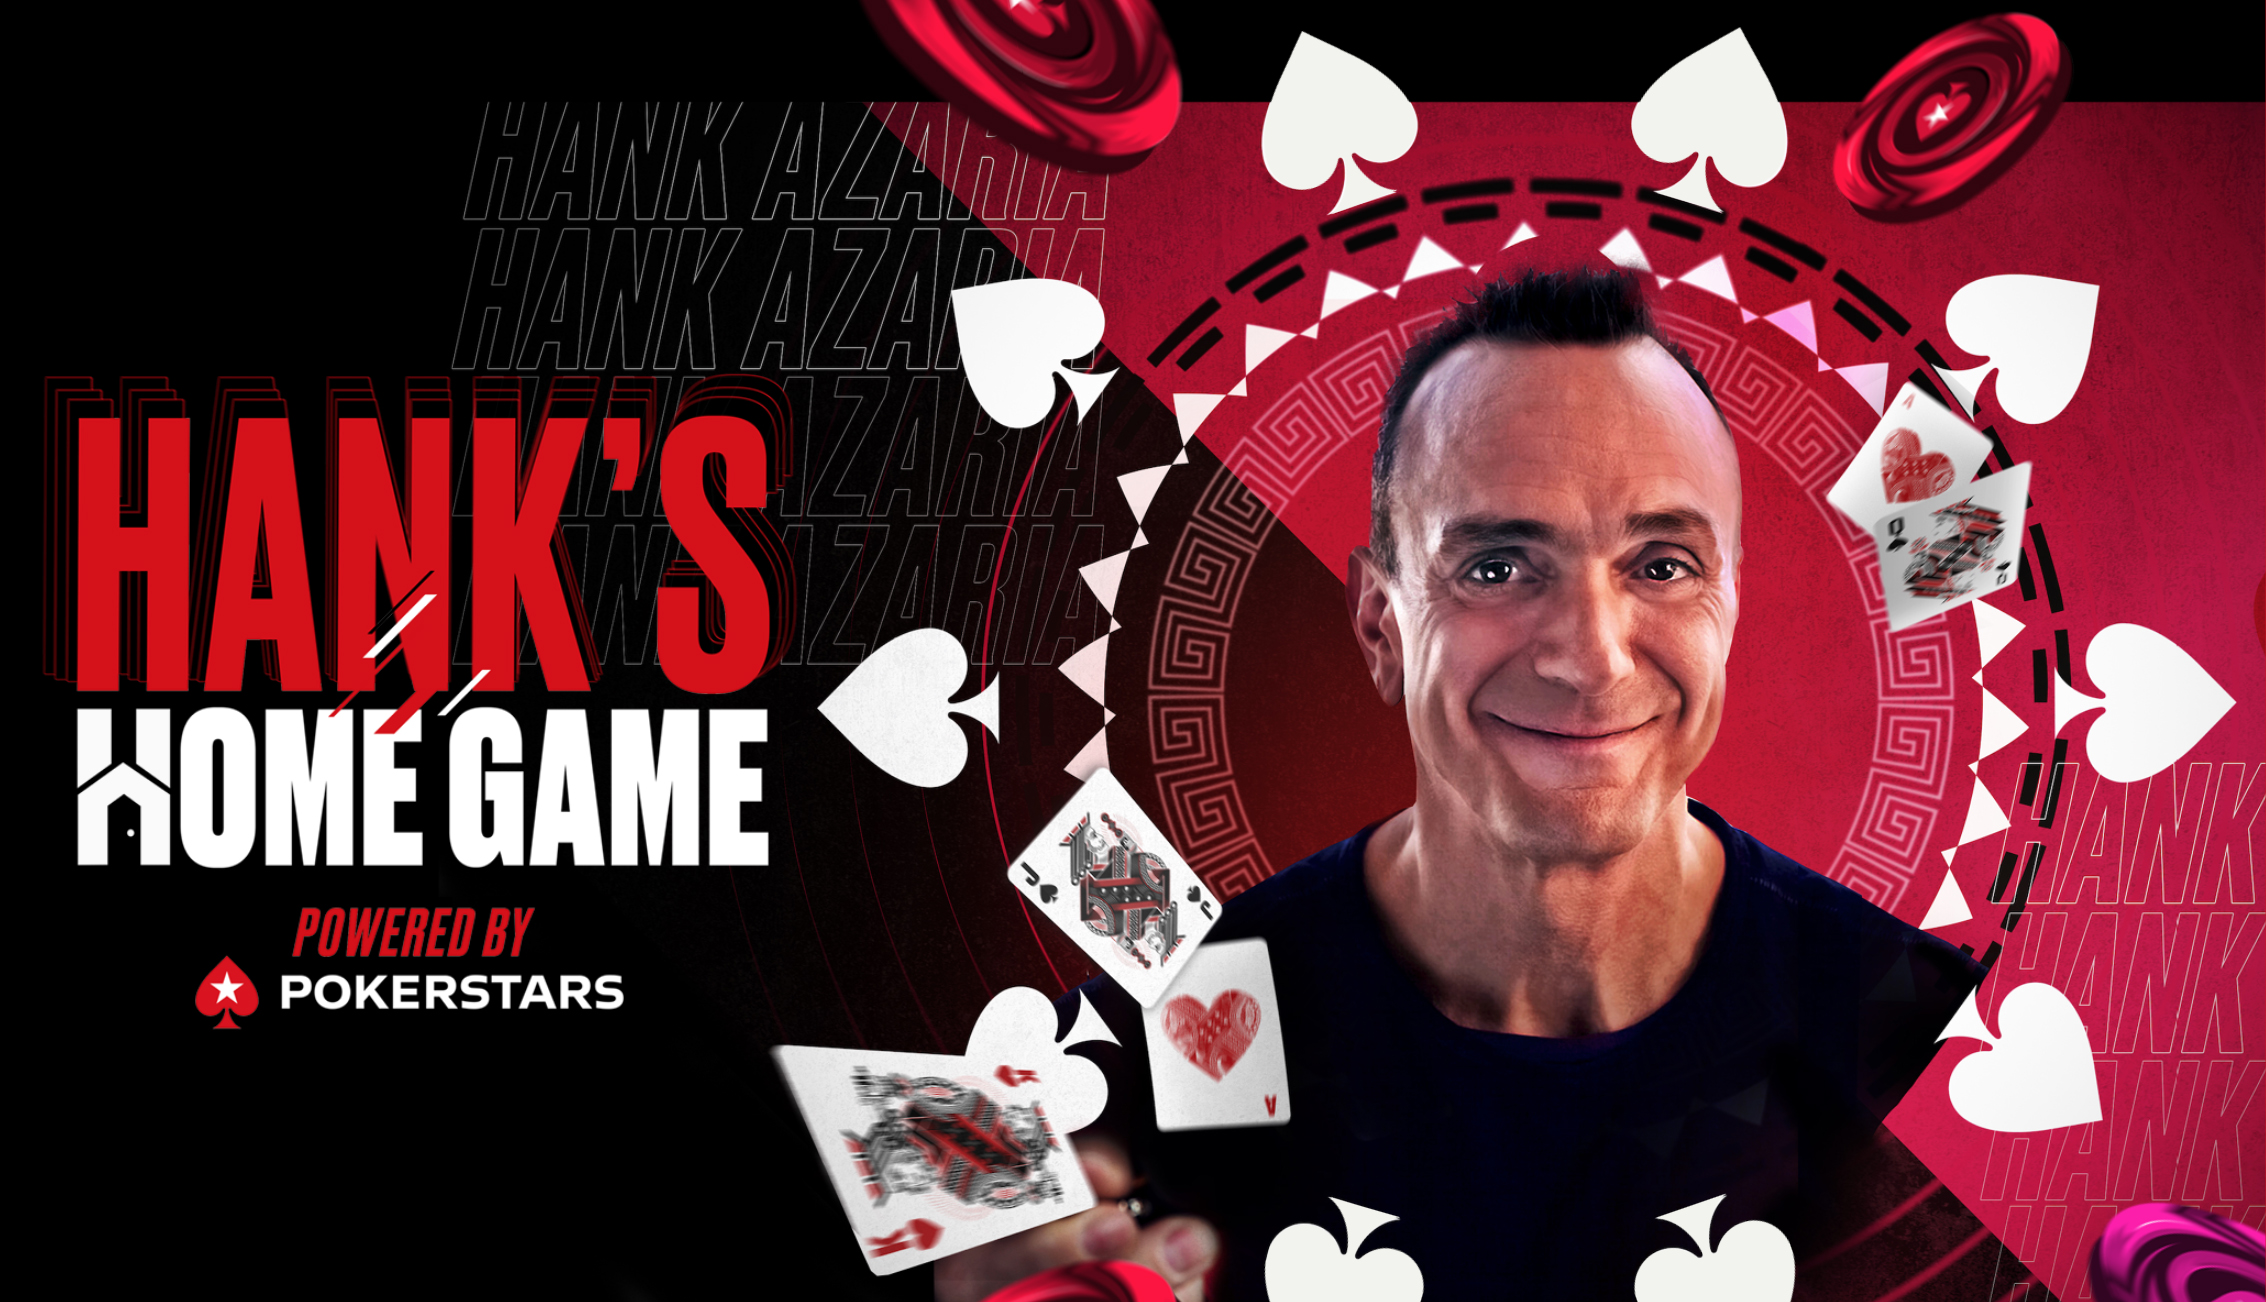 Hank's Home Game on PokerStars